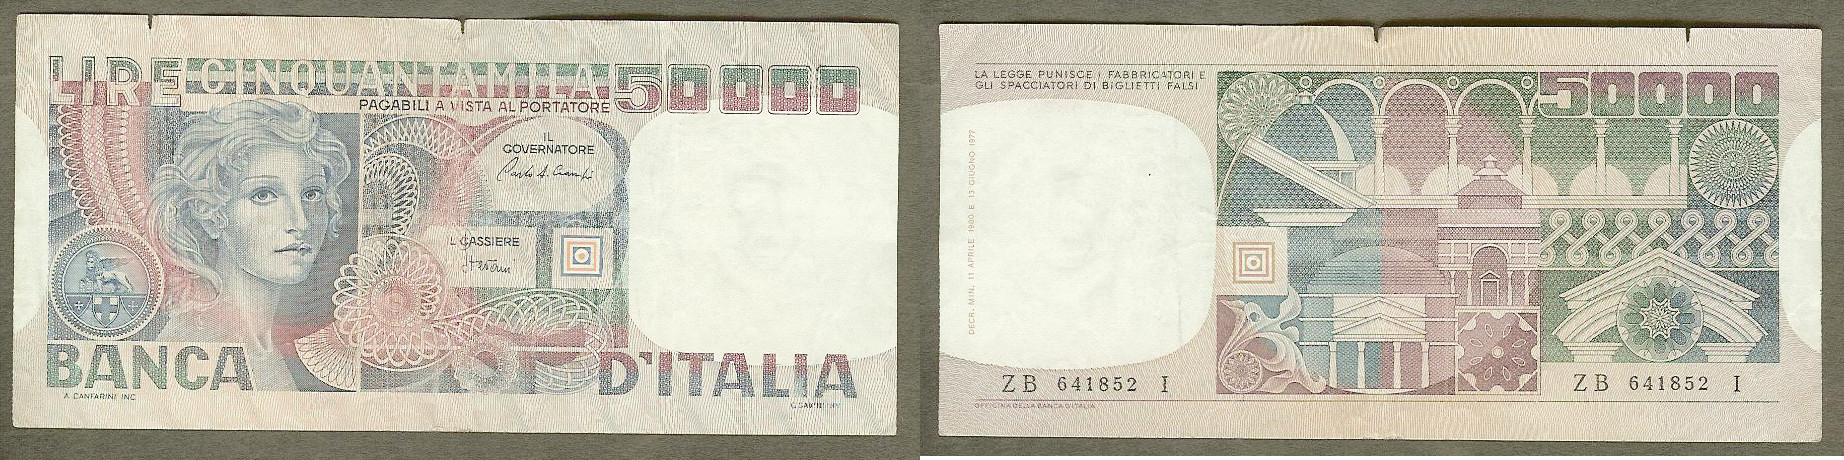 Italy 50000 lira 1977 VF